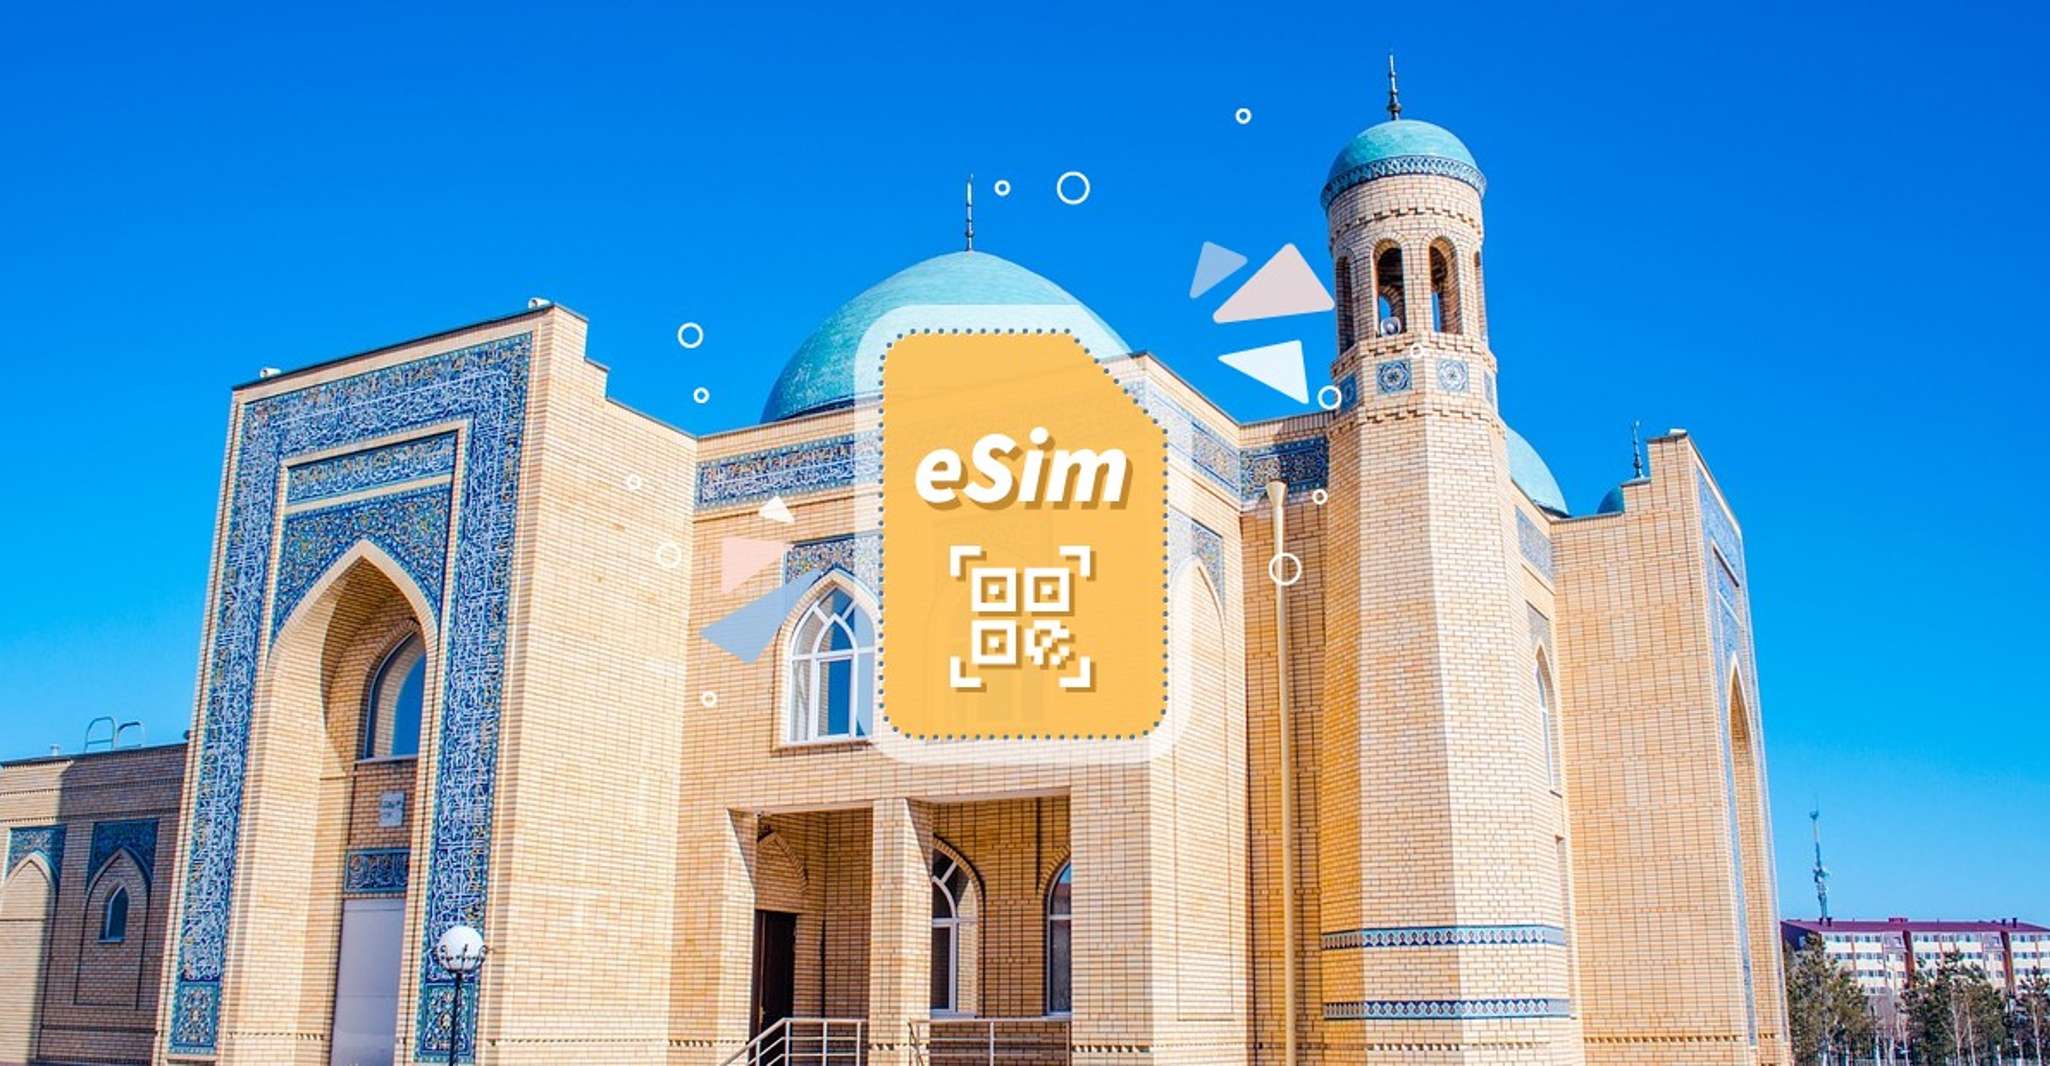 Kazakhstan/Europe, eSim Mobile Data Plan